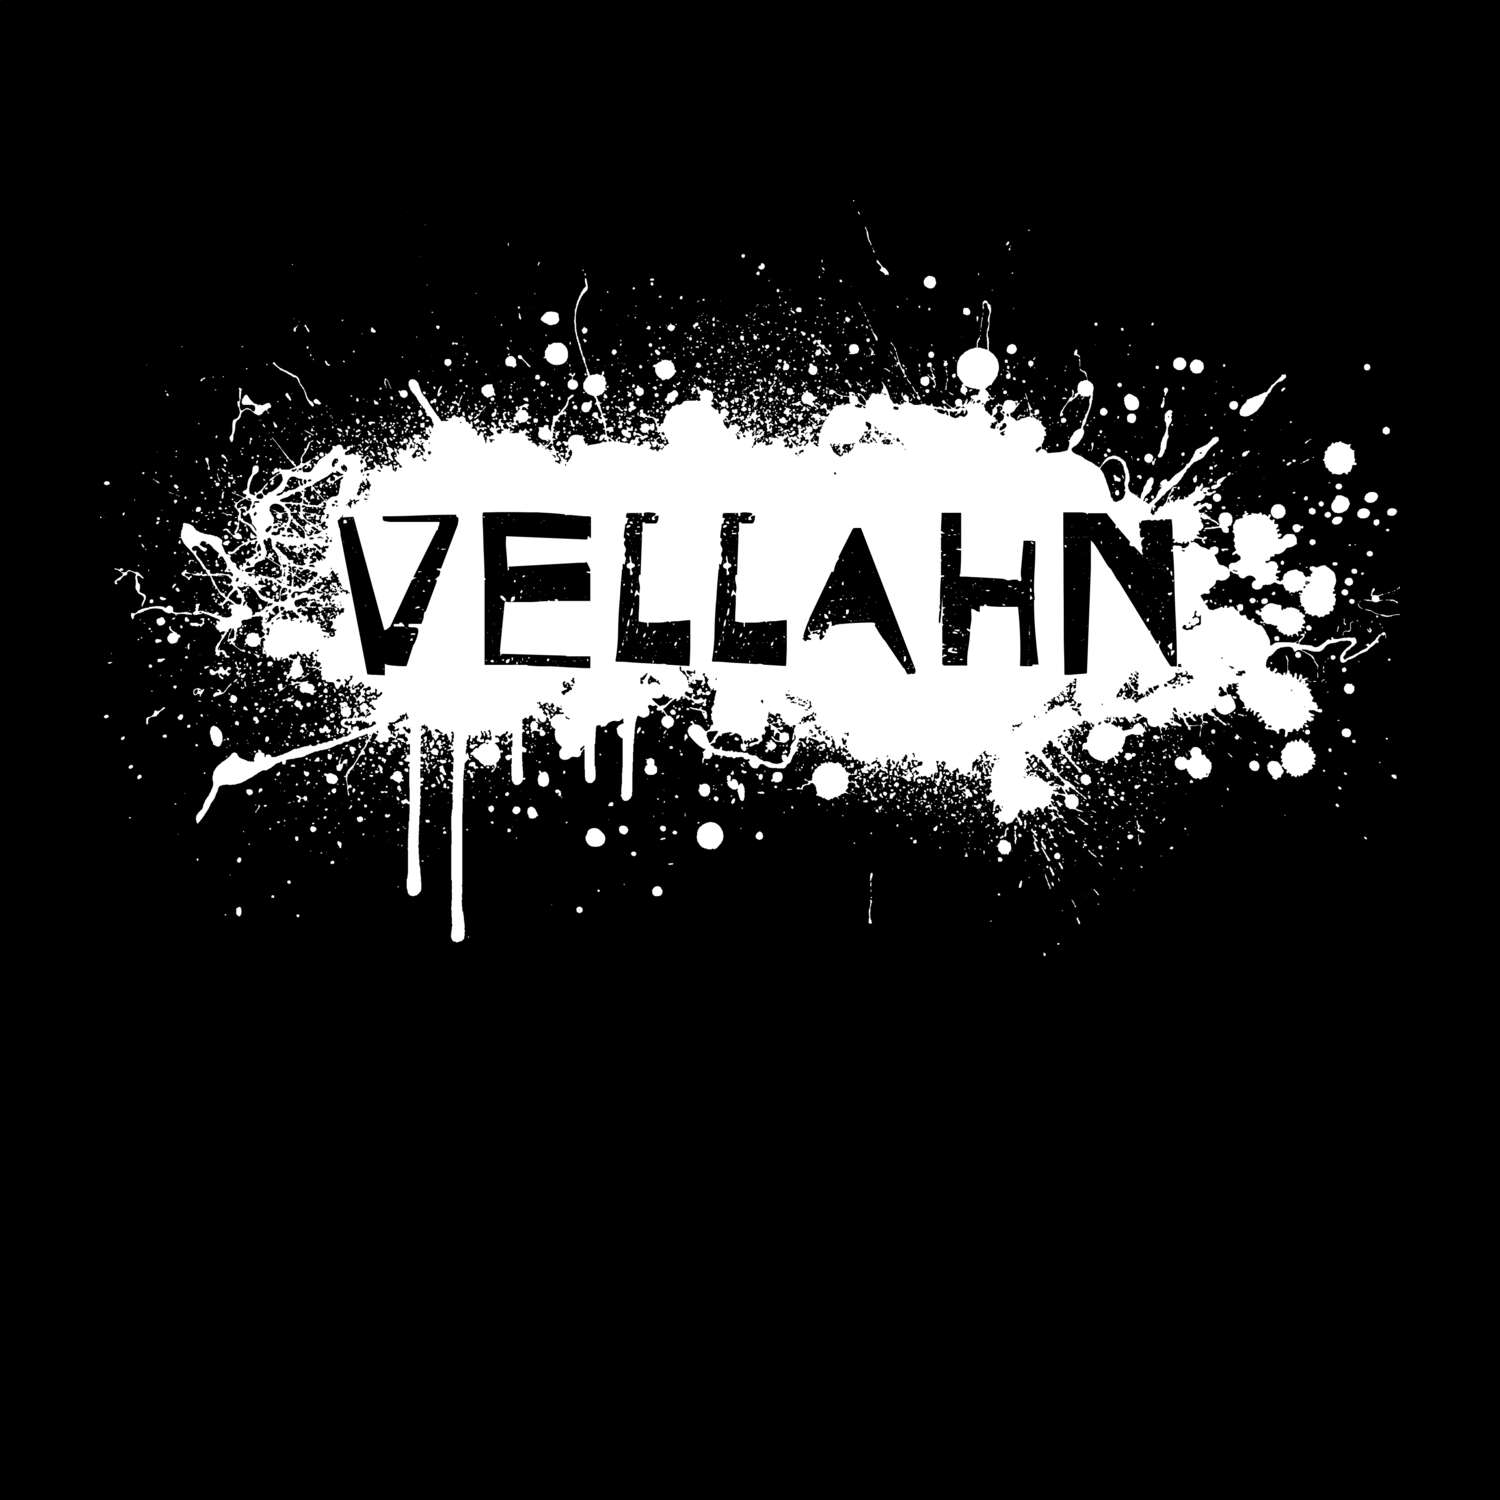 Vellahn T-Shirt »Paint Splash Punk«